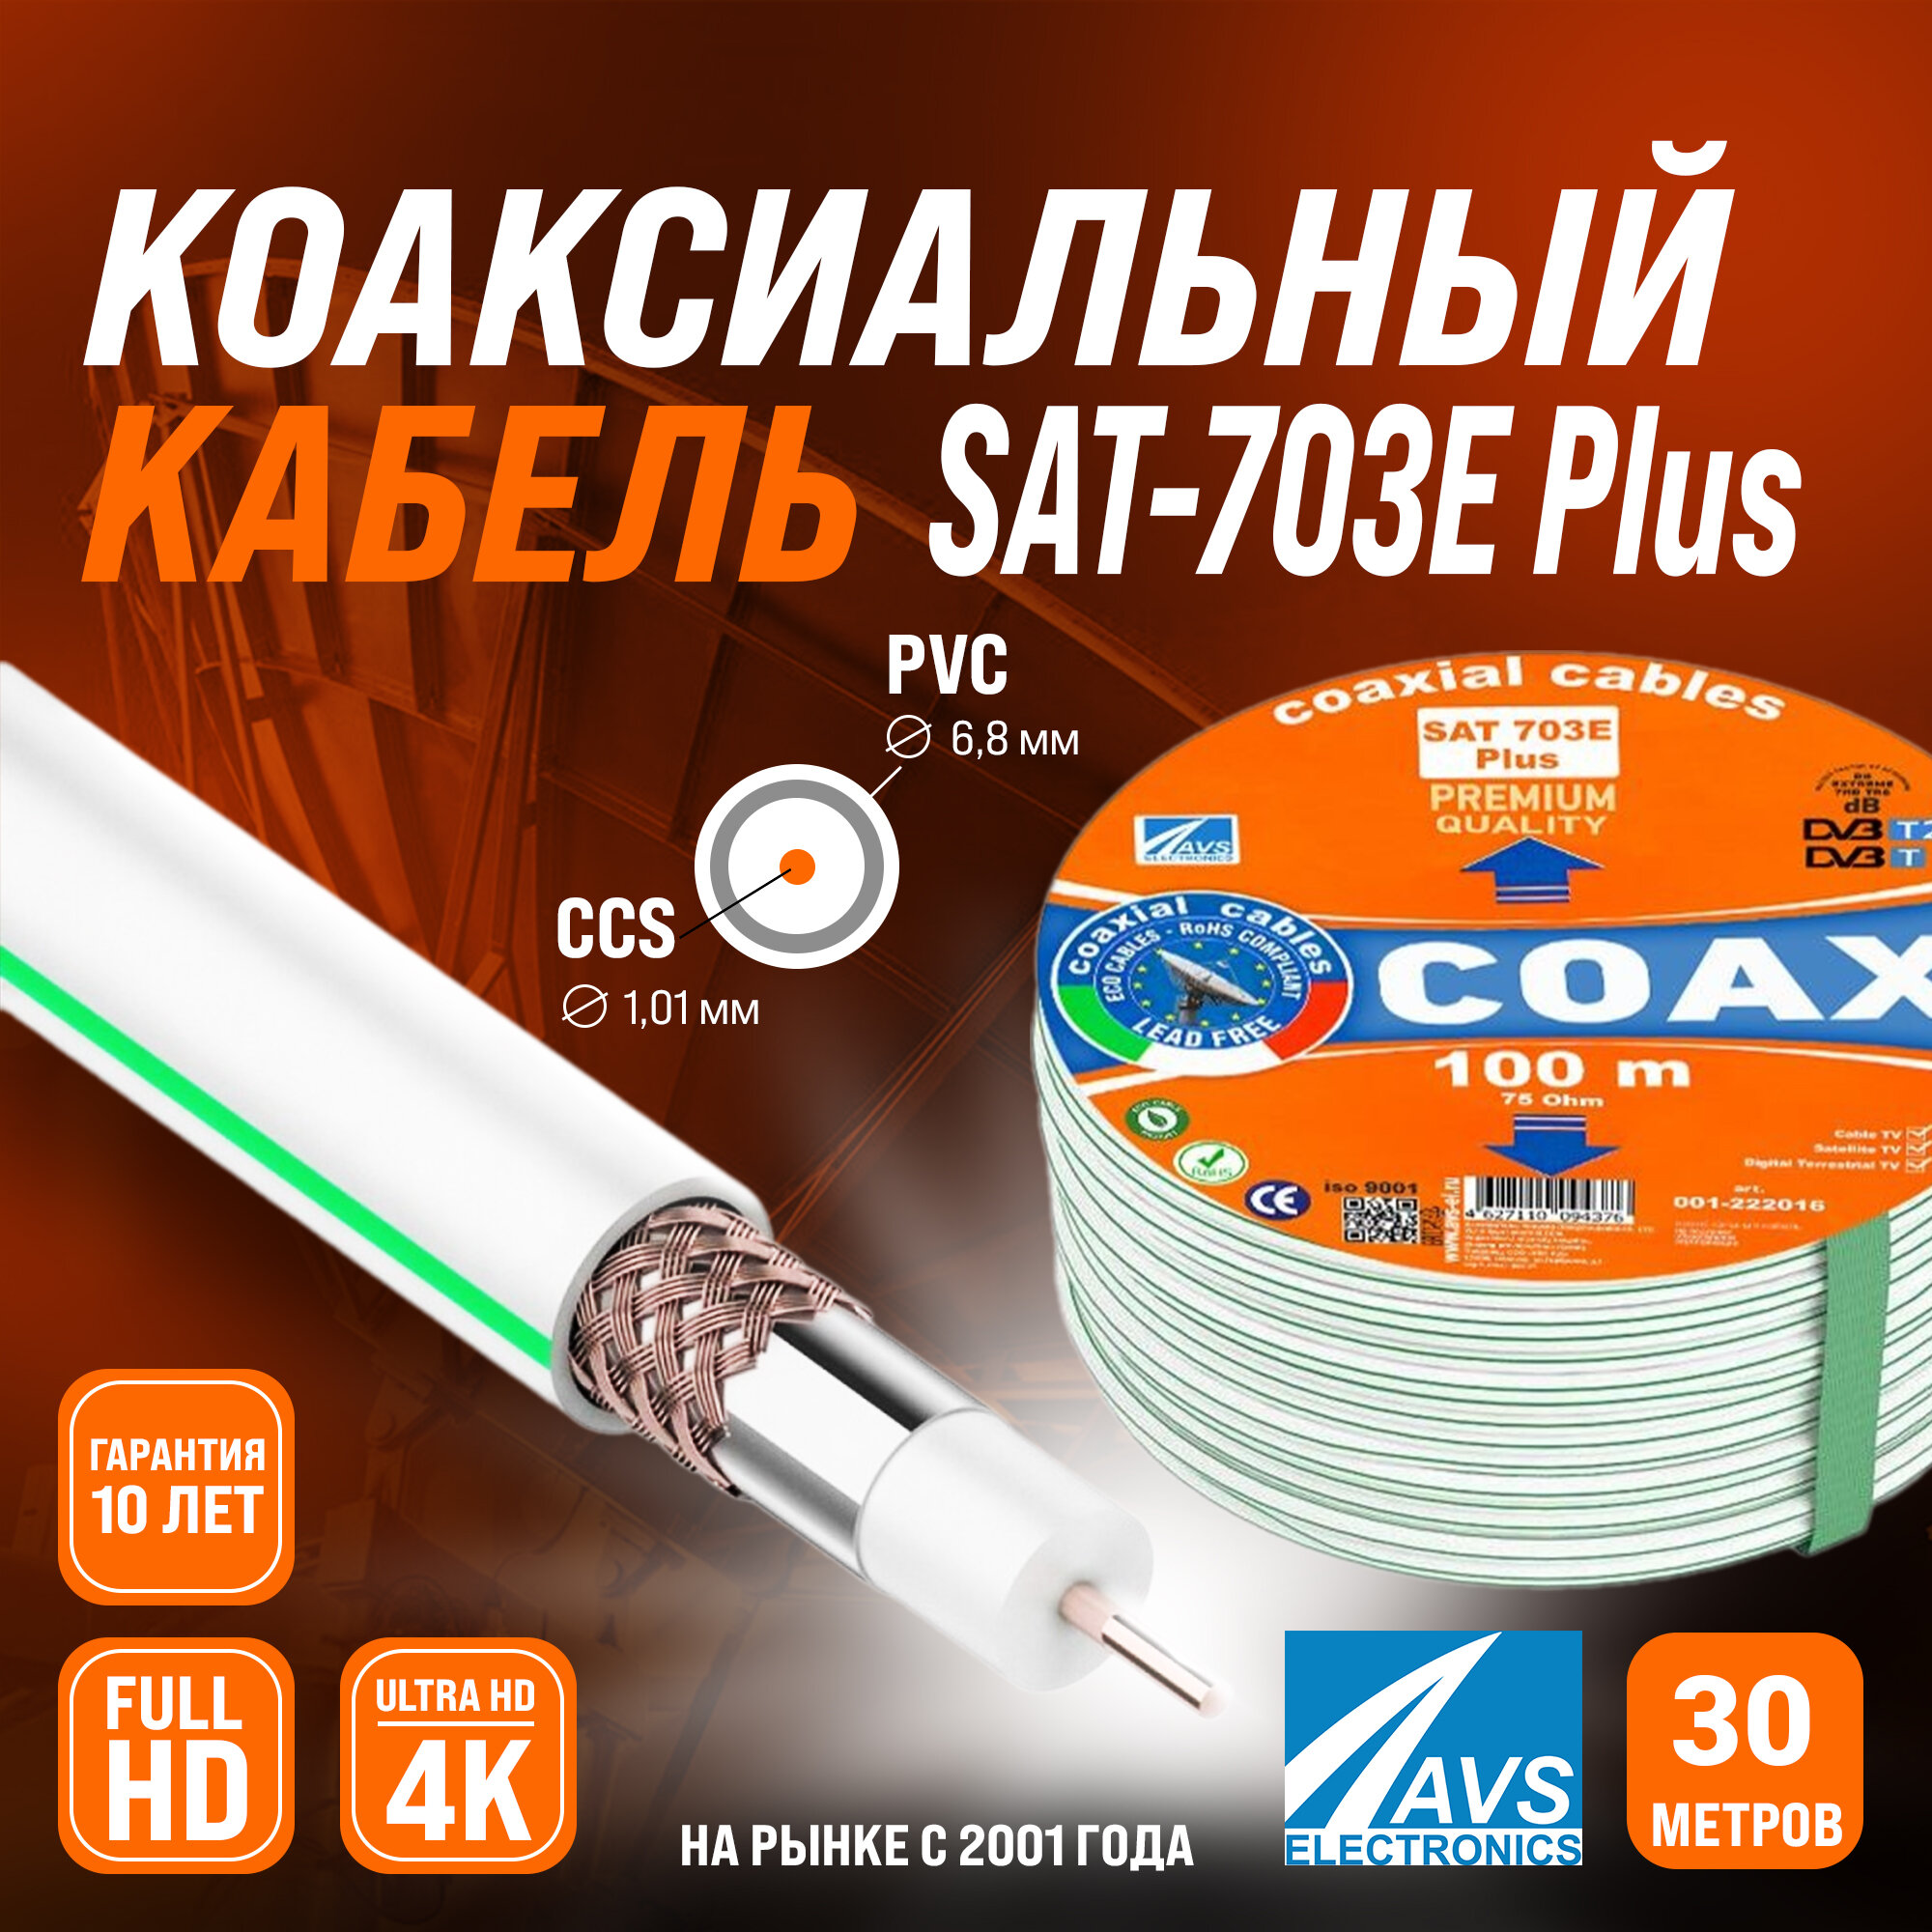 Коаксиальный телевизионный кабель 30 м SAT 703E Plus CCS AVS Electronics антенный провод для спутниковой тарелки, цифрового, эфирного тв 30 метров 001-222016/30